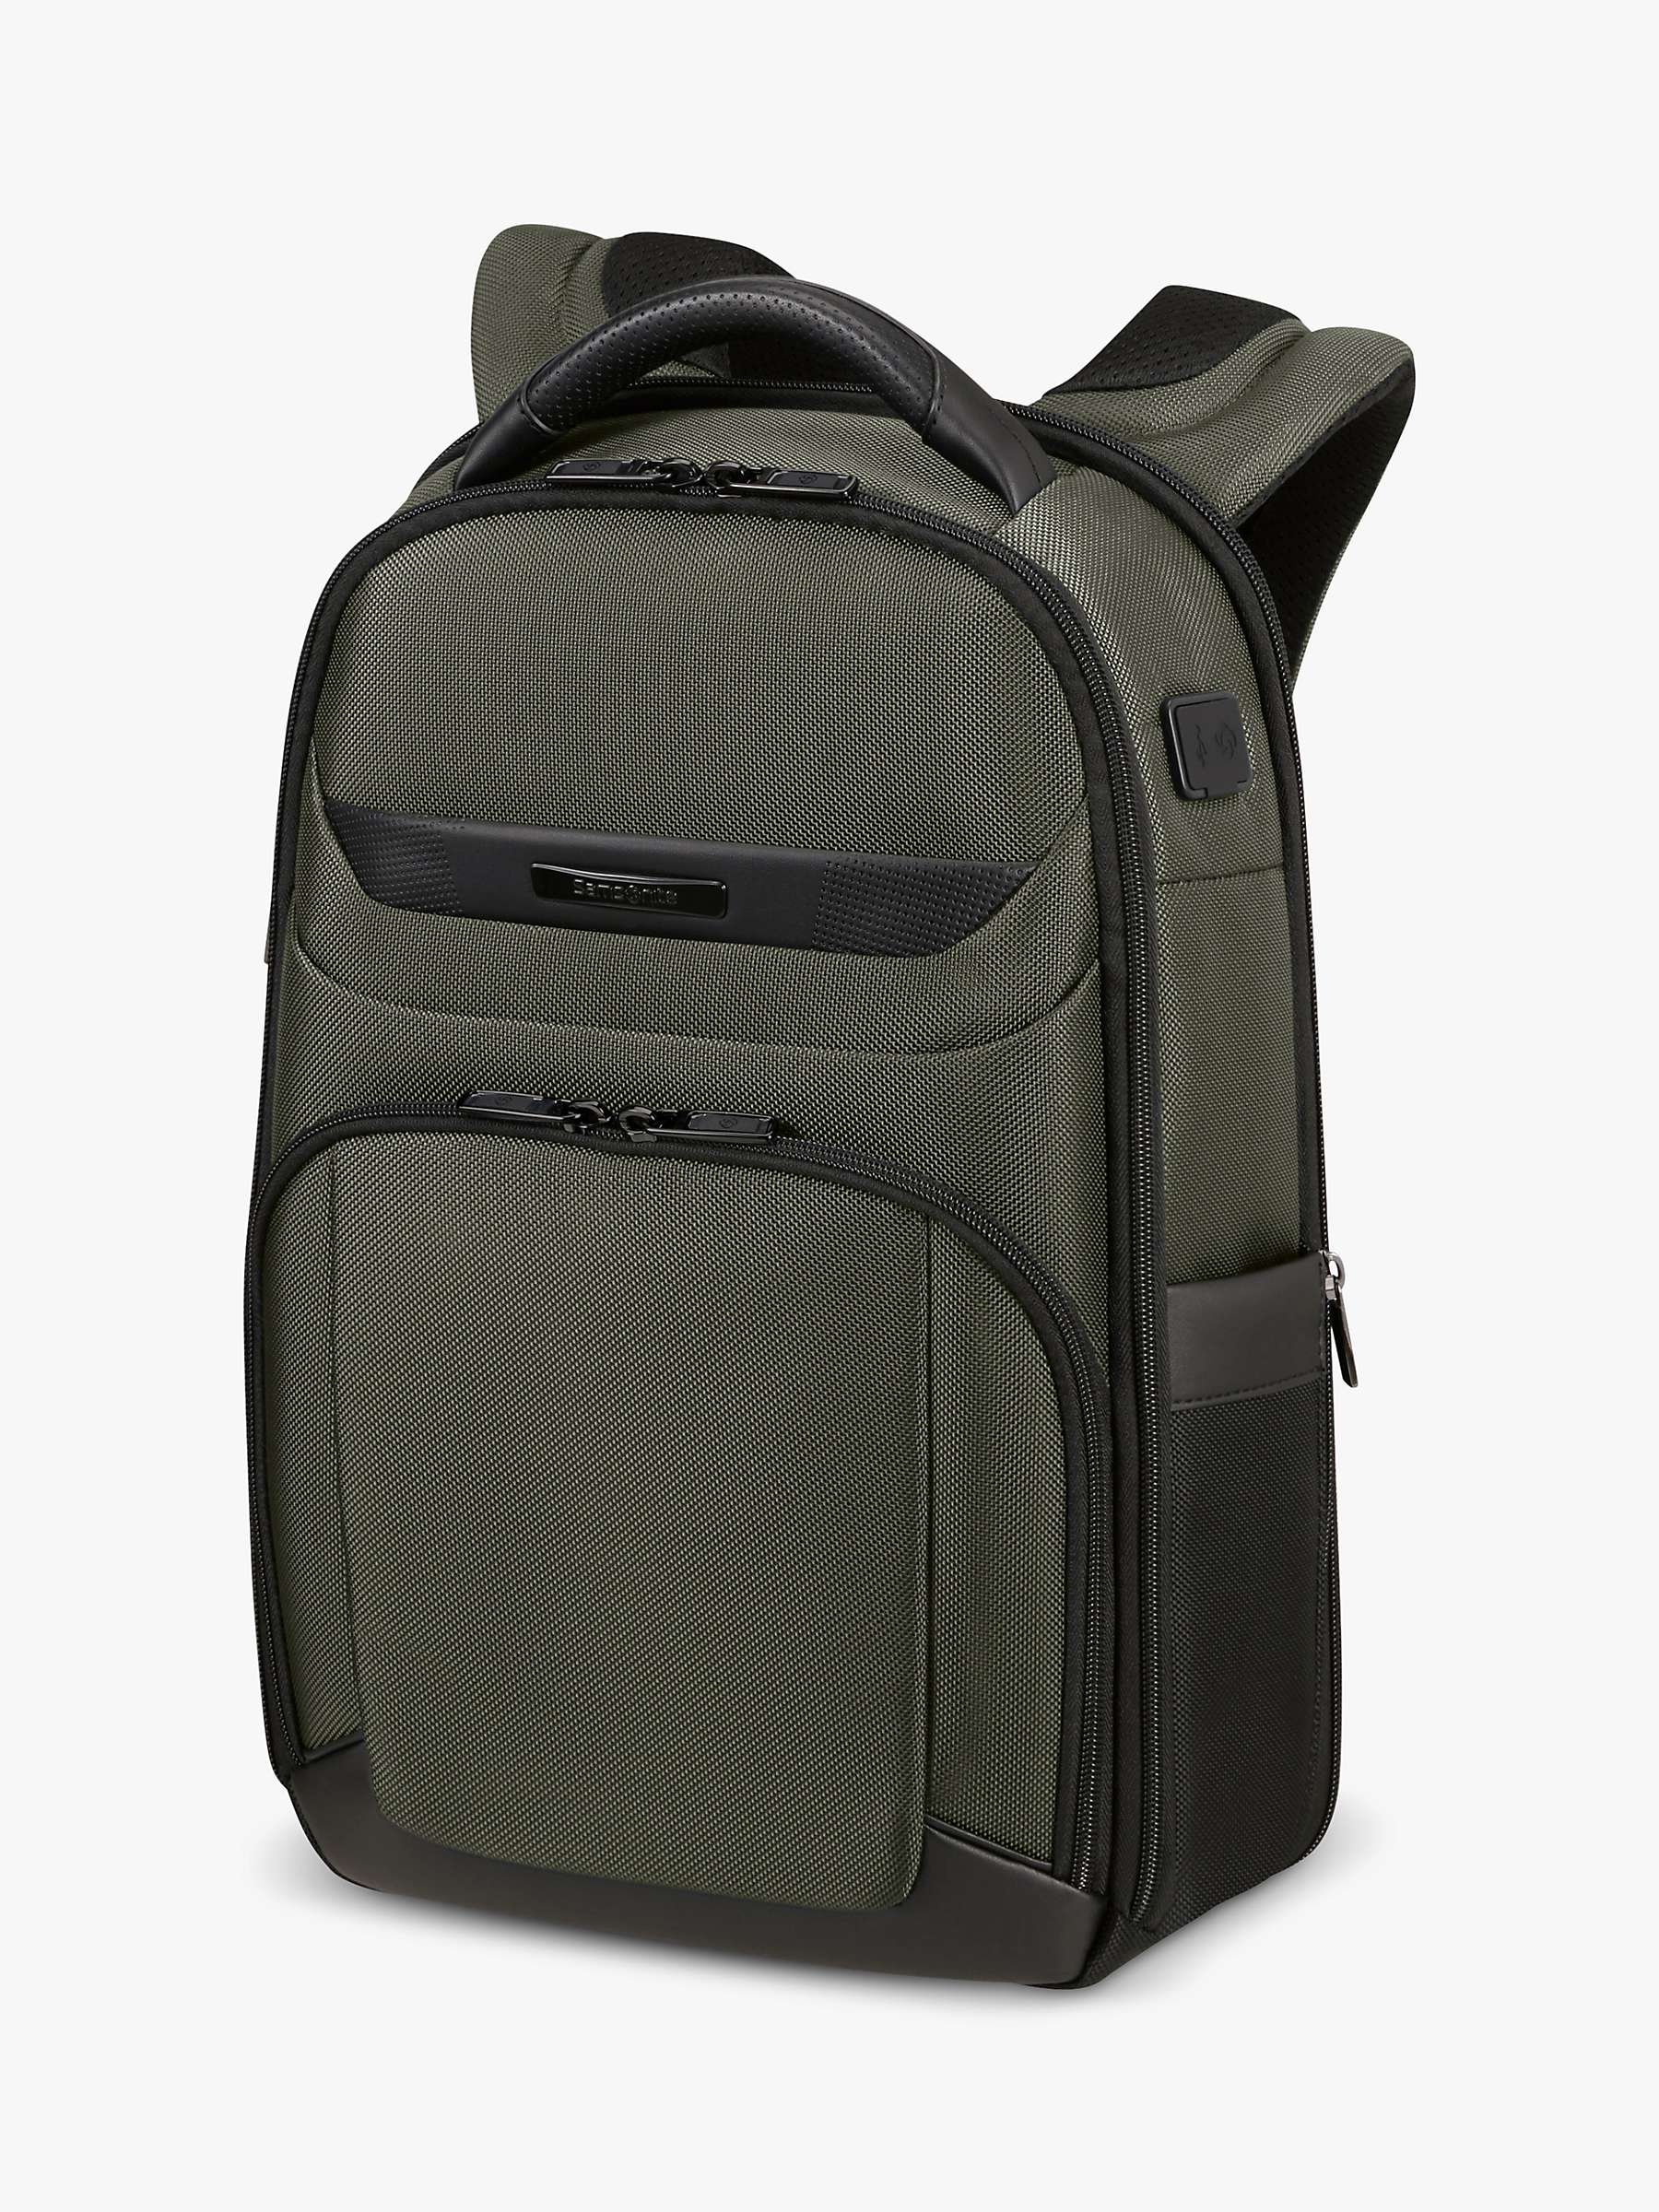 Buy Samsonite Pro-DLX 6 14.1" Laptop Backpack Online at johnlewis.com